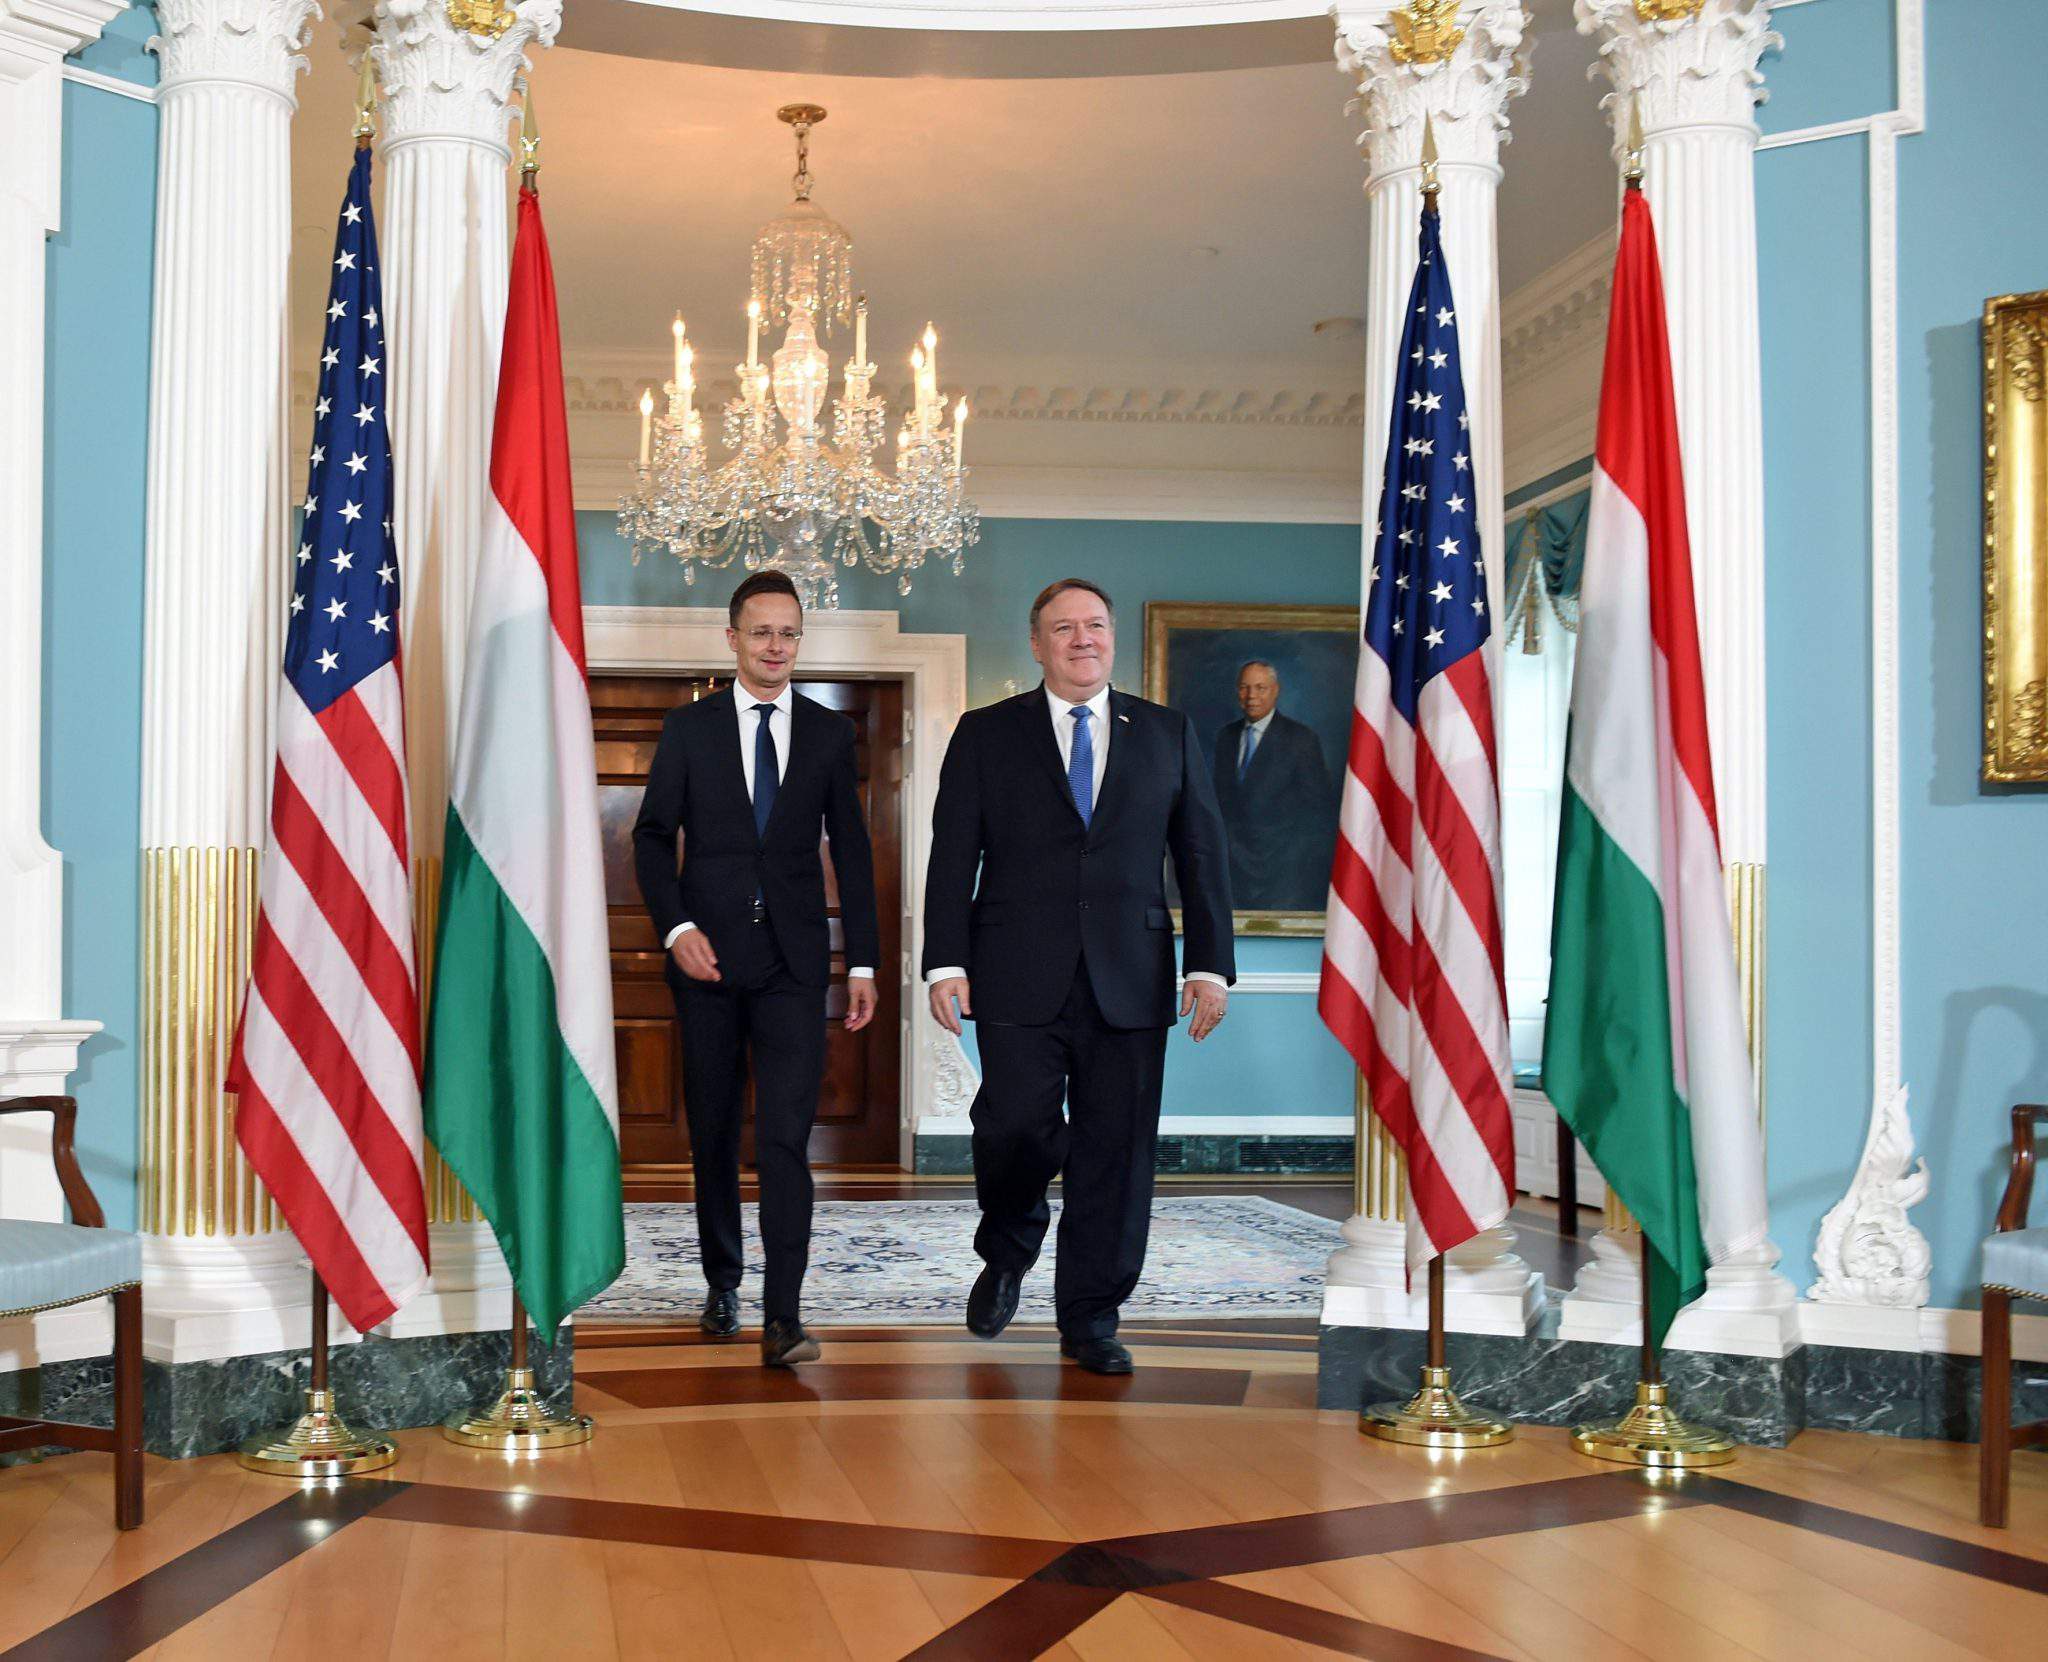 وقال وزير الخارجية بيتر زيجارتو بعد محادثات مع وزير الخارجية الأمريكي مايك بومبيو في واشنطن